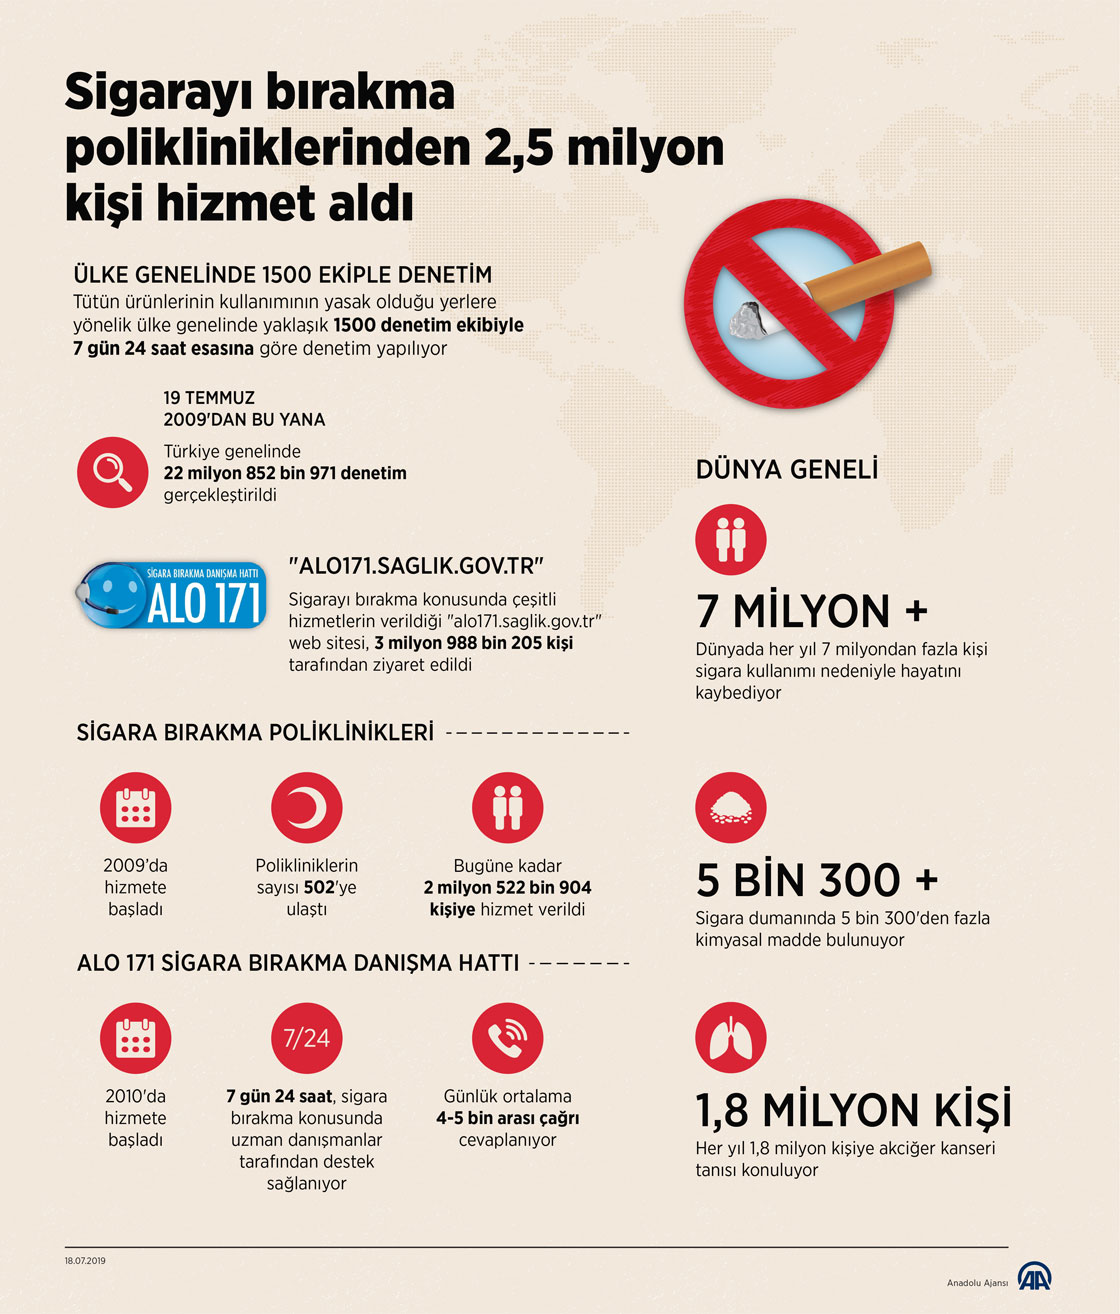 Sigarayı bırakma polikliniklerinden 2,5 milyon kişi hizmet aldı